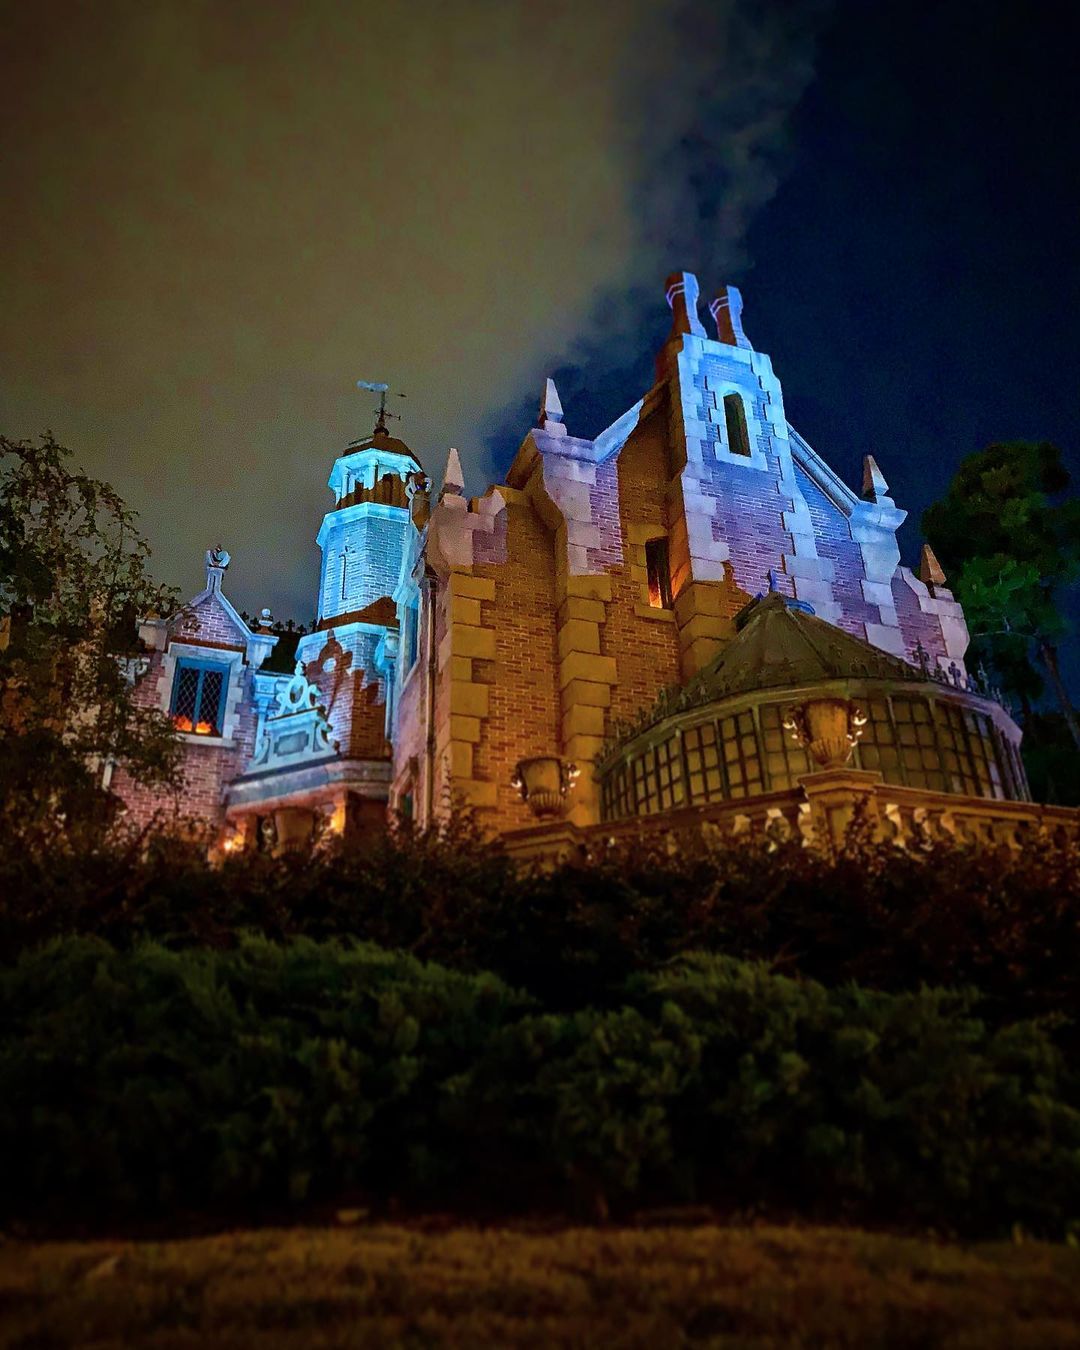 Haunted Mansion - Attraktion des magischen Königreichs